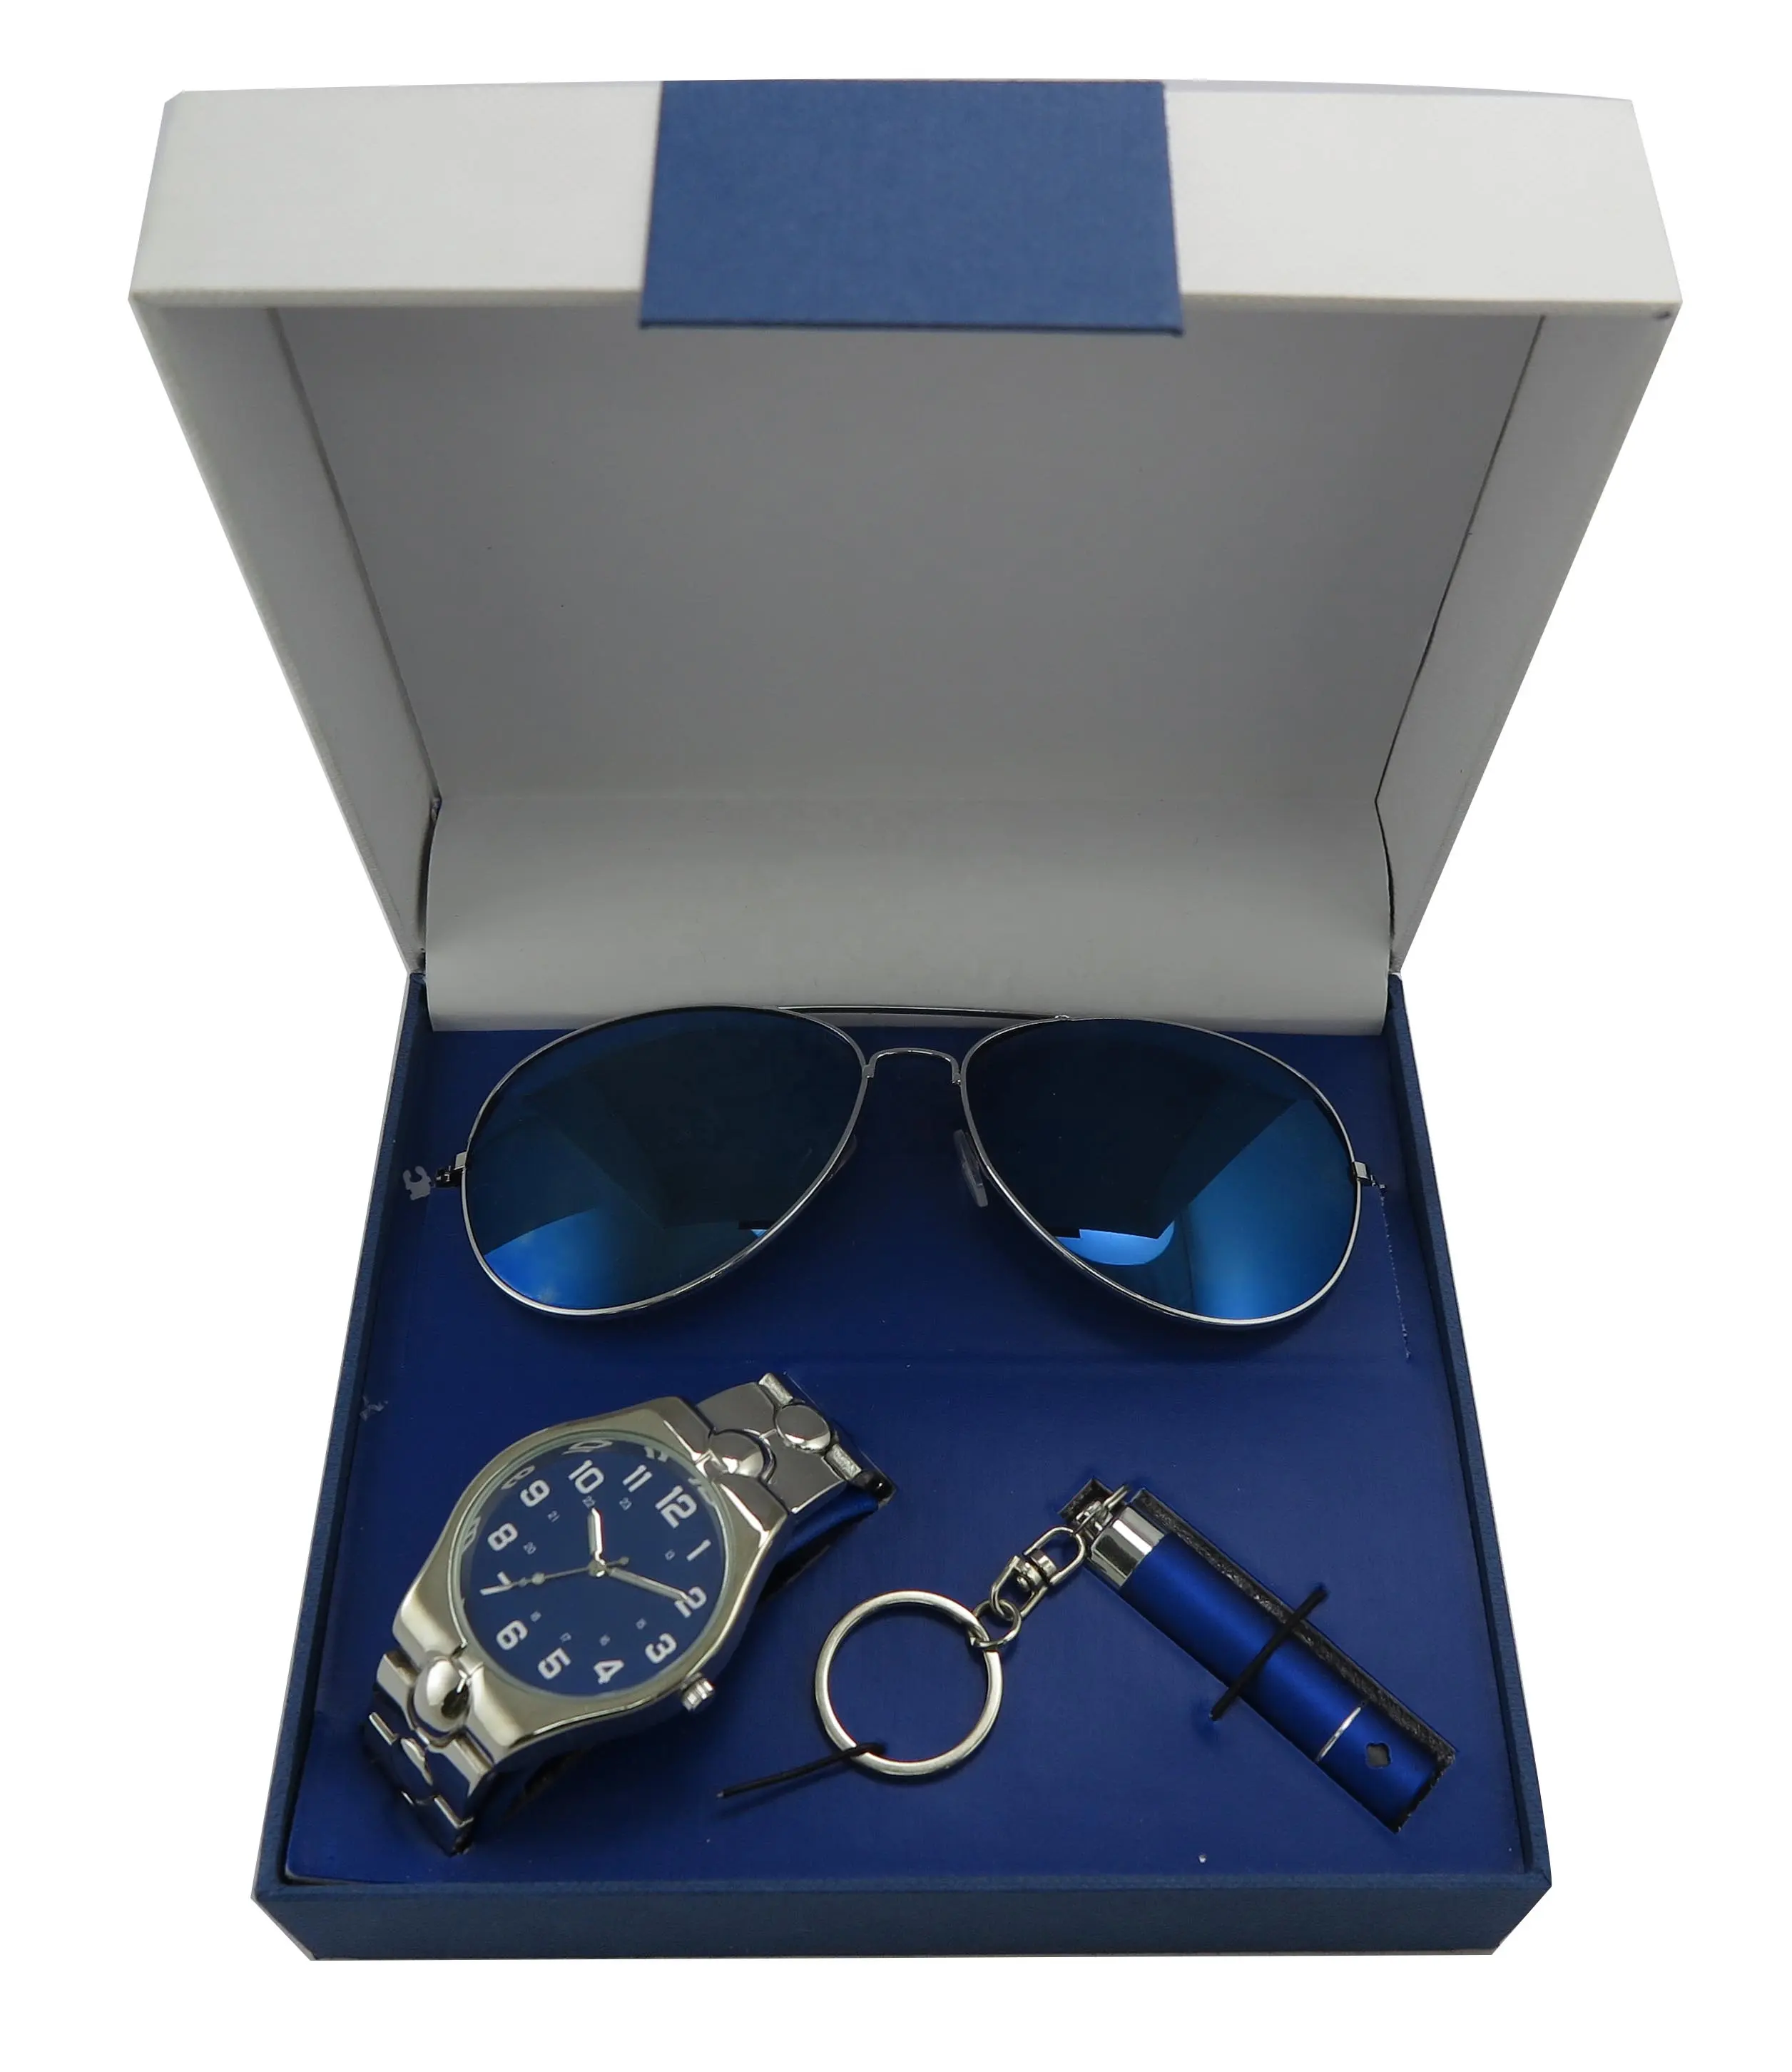 Moda maschile Relojes regali articoli orologio e bracciale Set regalo per uomo regalo festa del papà aziendale